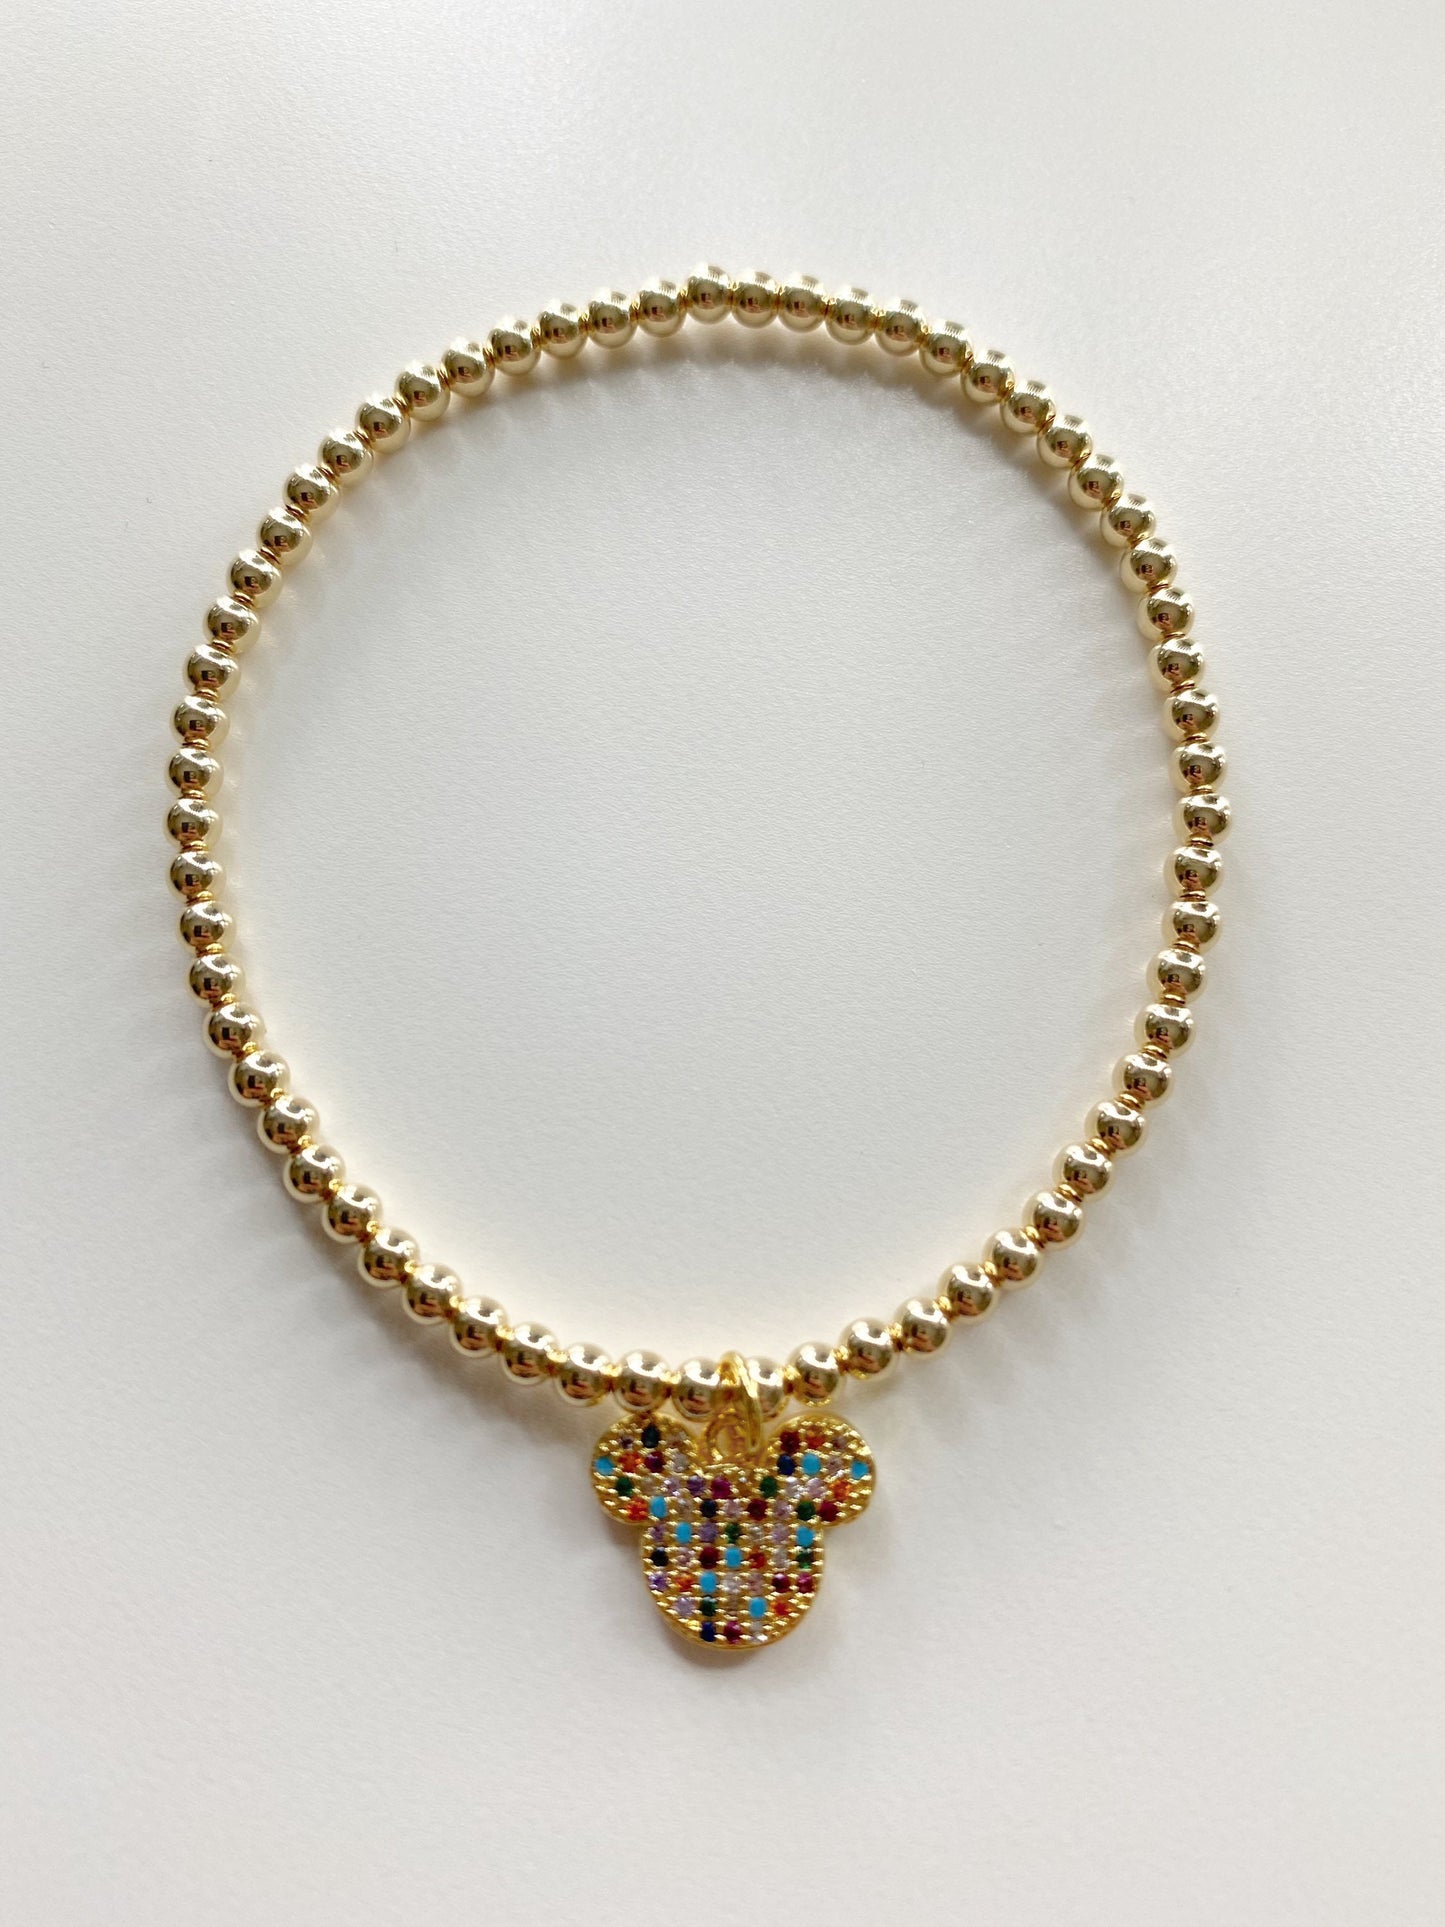 The Pave Disney Bracelet